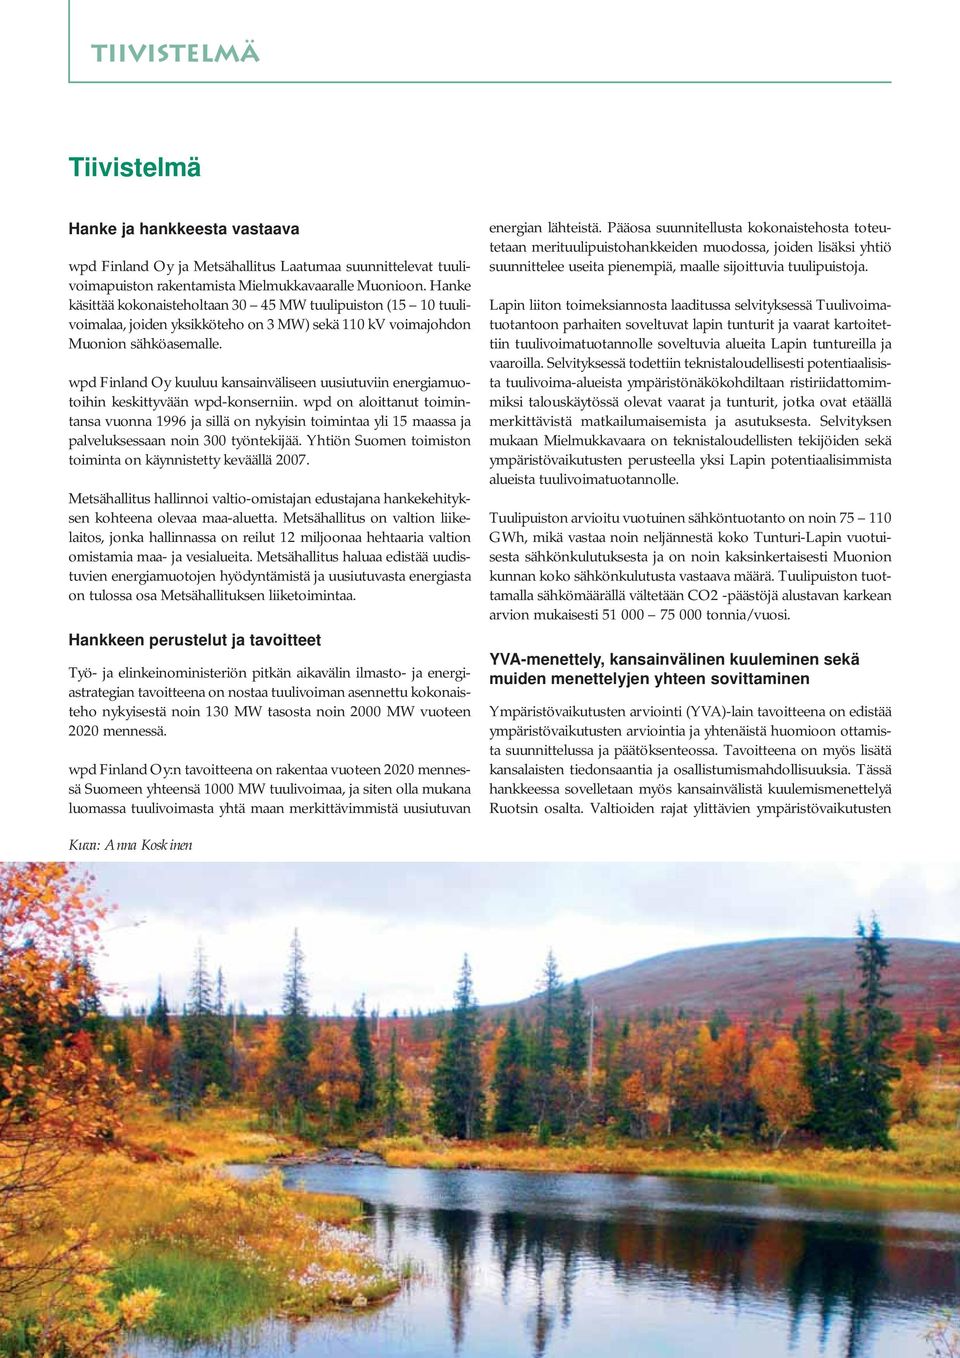 wpd Finland Oy kuuluu kansainväliseen uusiutuviin energiamuotoihin keskittyvään wpd-konserniin.